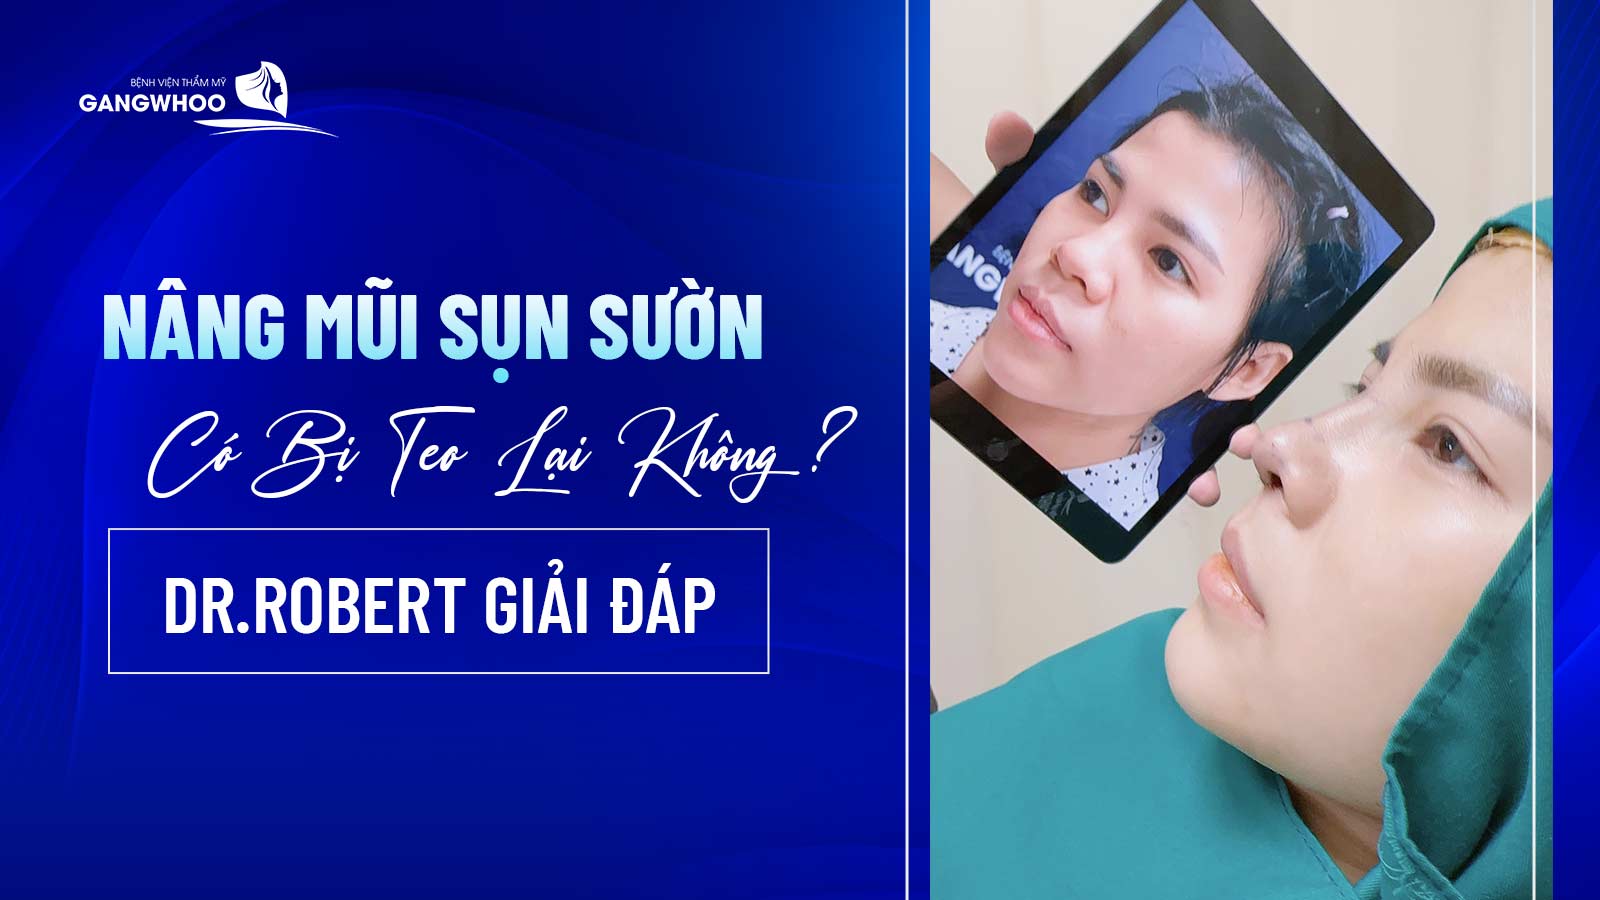 Nang Mui Sun Suon Co Bi Teo Lai Khong